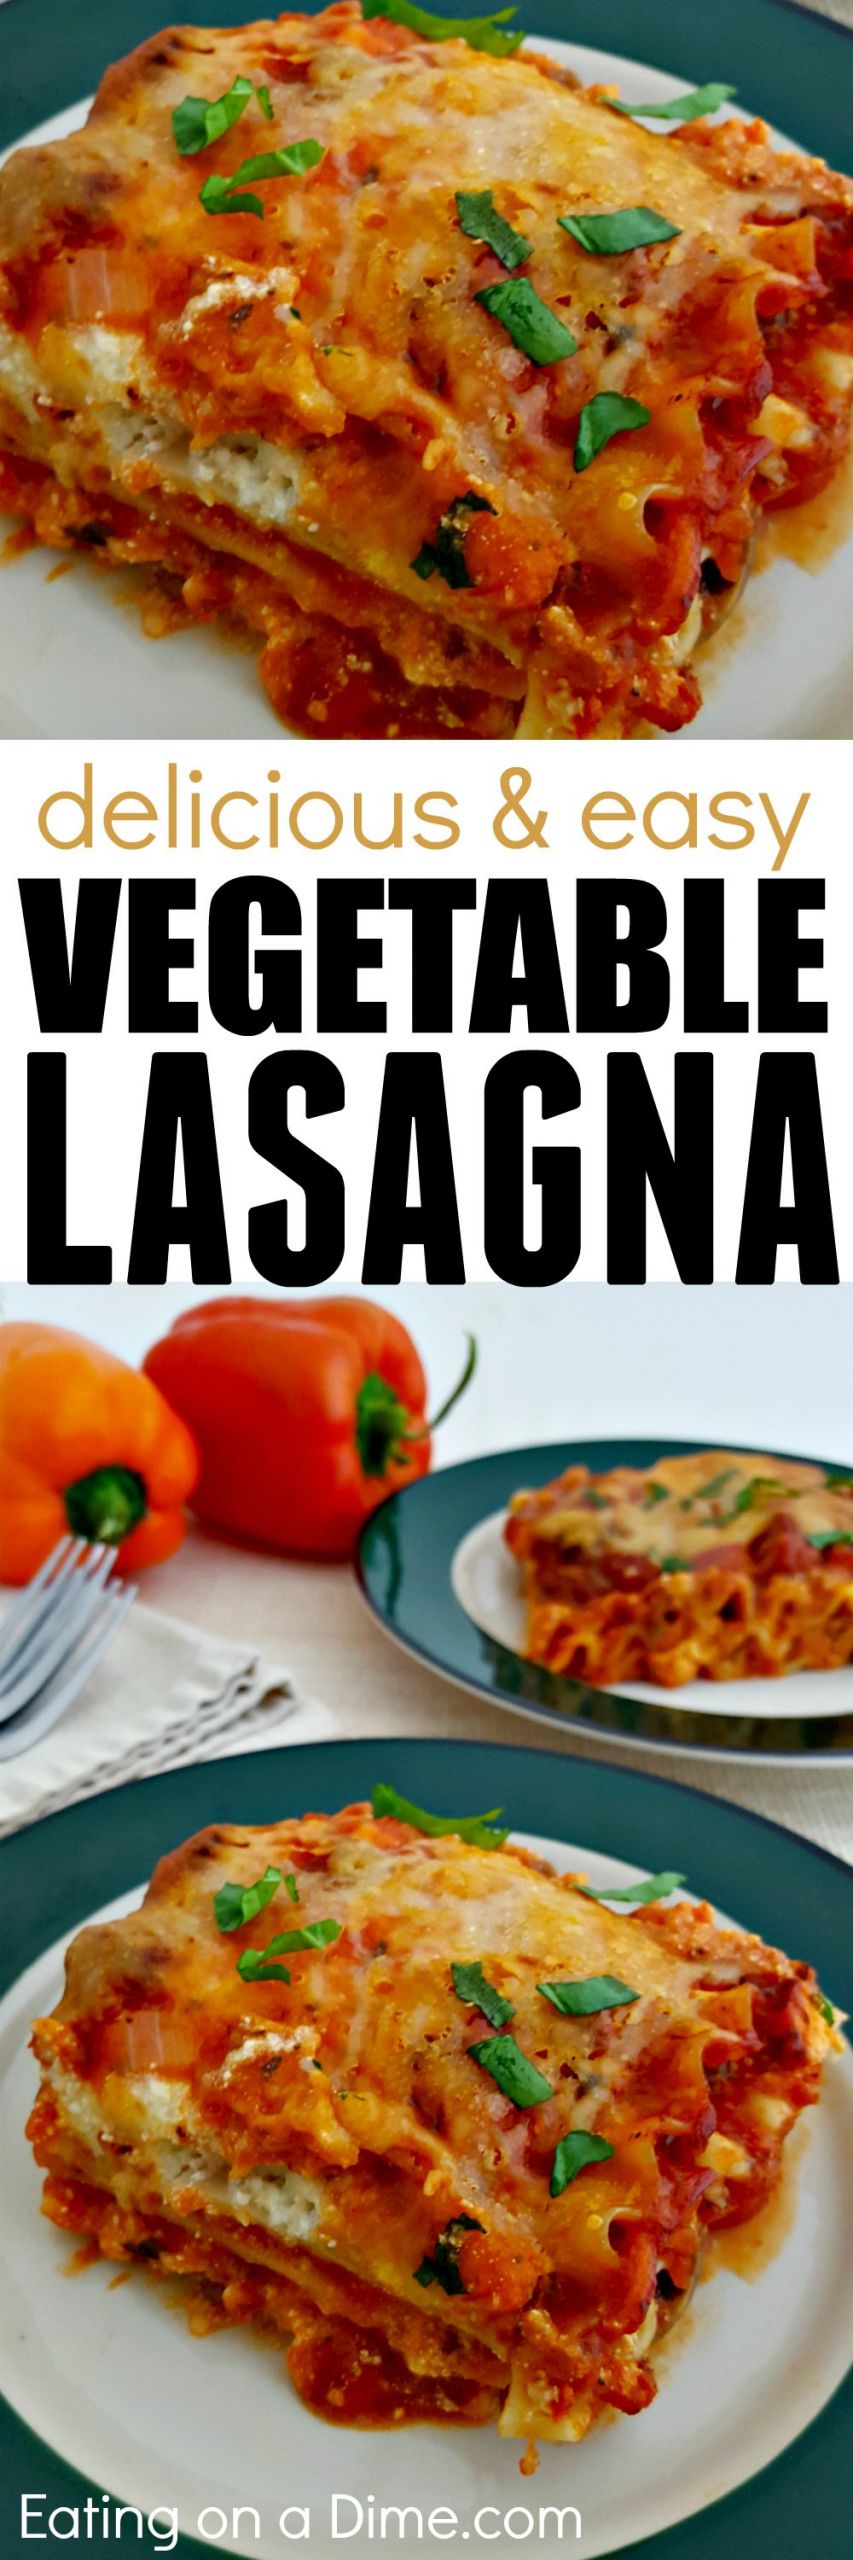 Veggie Lasagna Recipe Simple
 Easy Ve arian Lasagna Recipe Meatless Lasagna Everyone